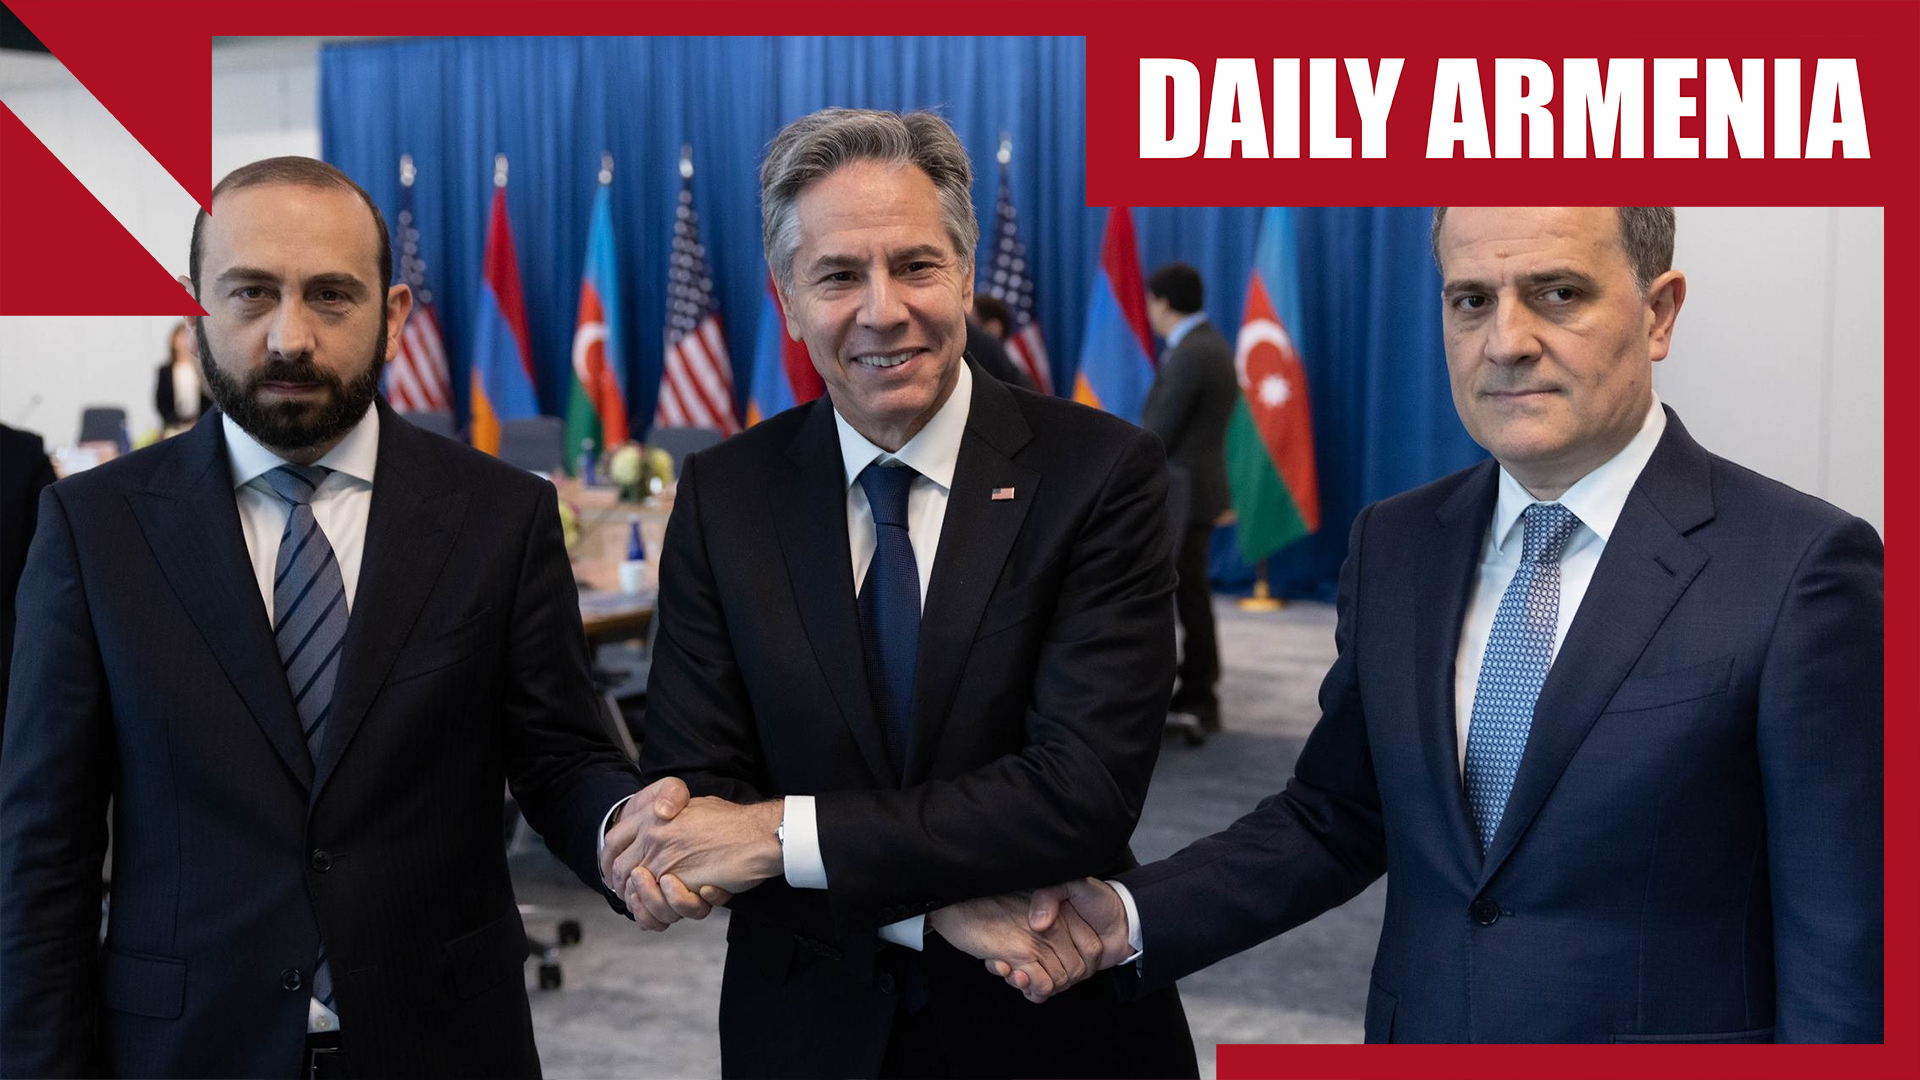 Foreign ministers of Armenia, Azerbaijan to meet in Washington next week